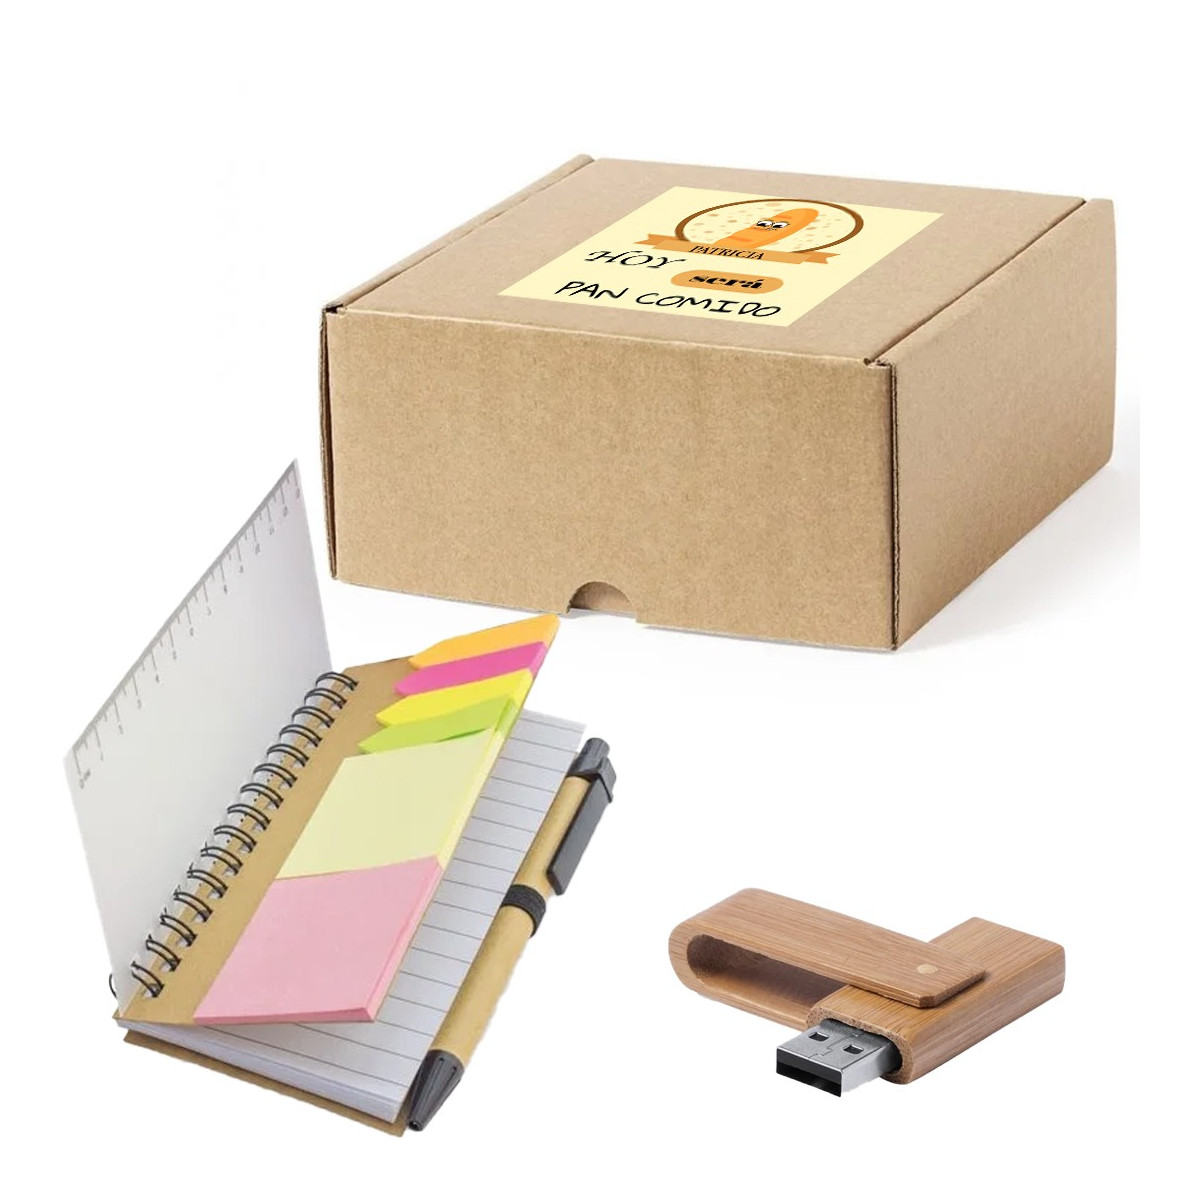 Caderno para notas e usb 16 gb apresentado em caixa de papelão personalizada com adesivo hoje vai ser moleza